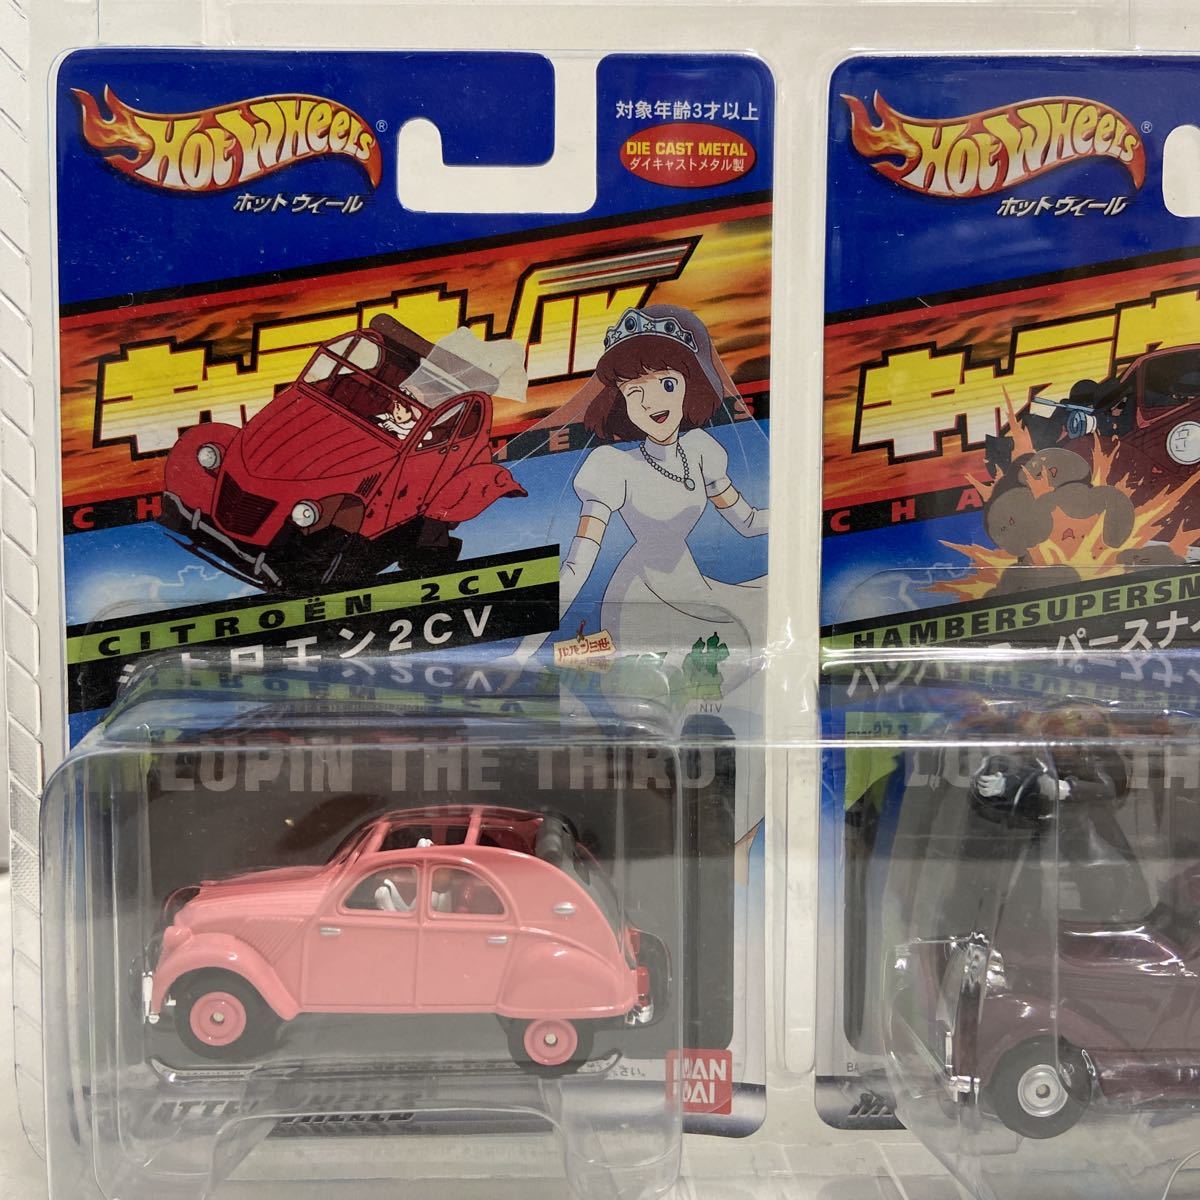  нераспечатанный Cara Wheel Lupin III фильм kali мужской Toro. замок комплект FIAT500 Citroen 2CV Fiat миникар фигурка Miyazaki .